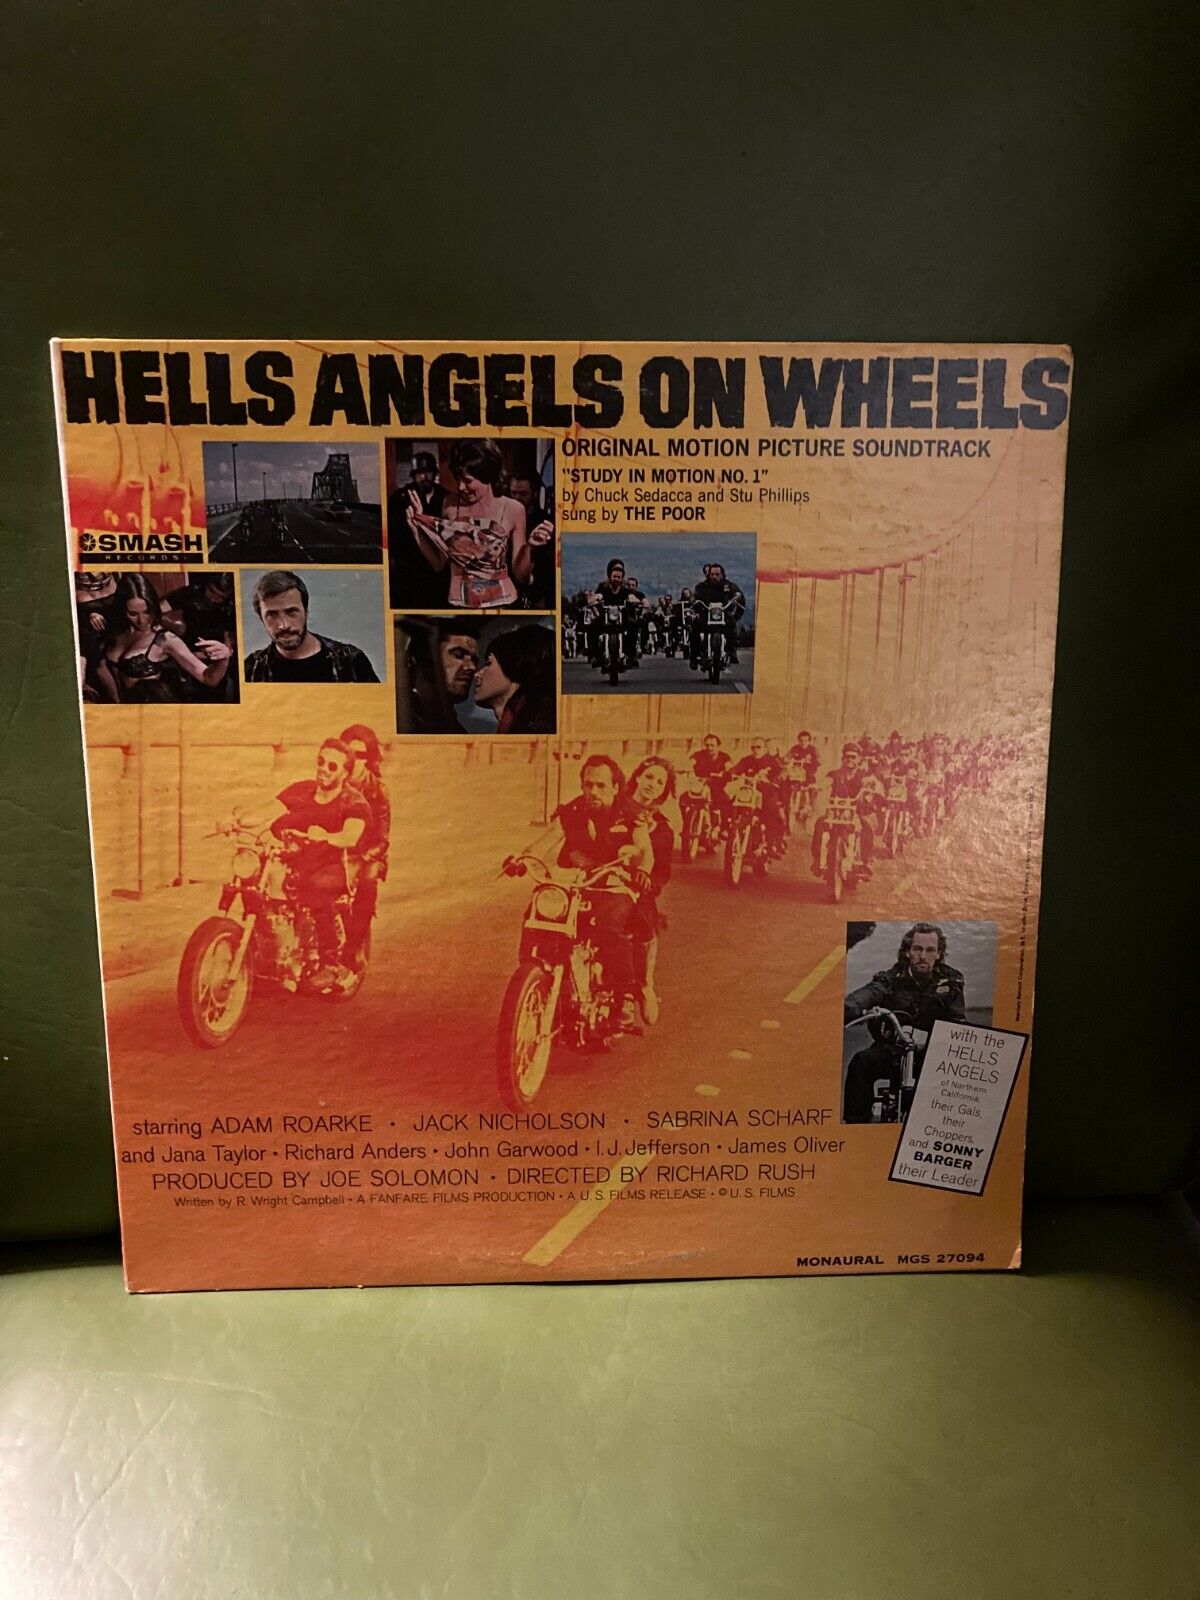 HELLS ANGELS ON WHEELS VINYL LP Soundtrack OG 1967 White Label Promo VG++